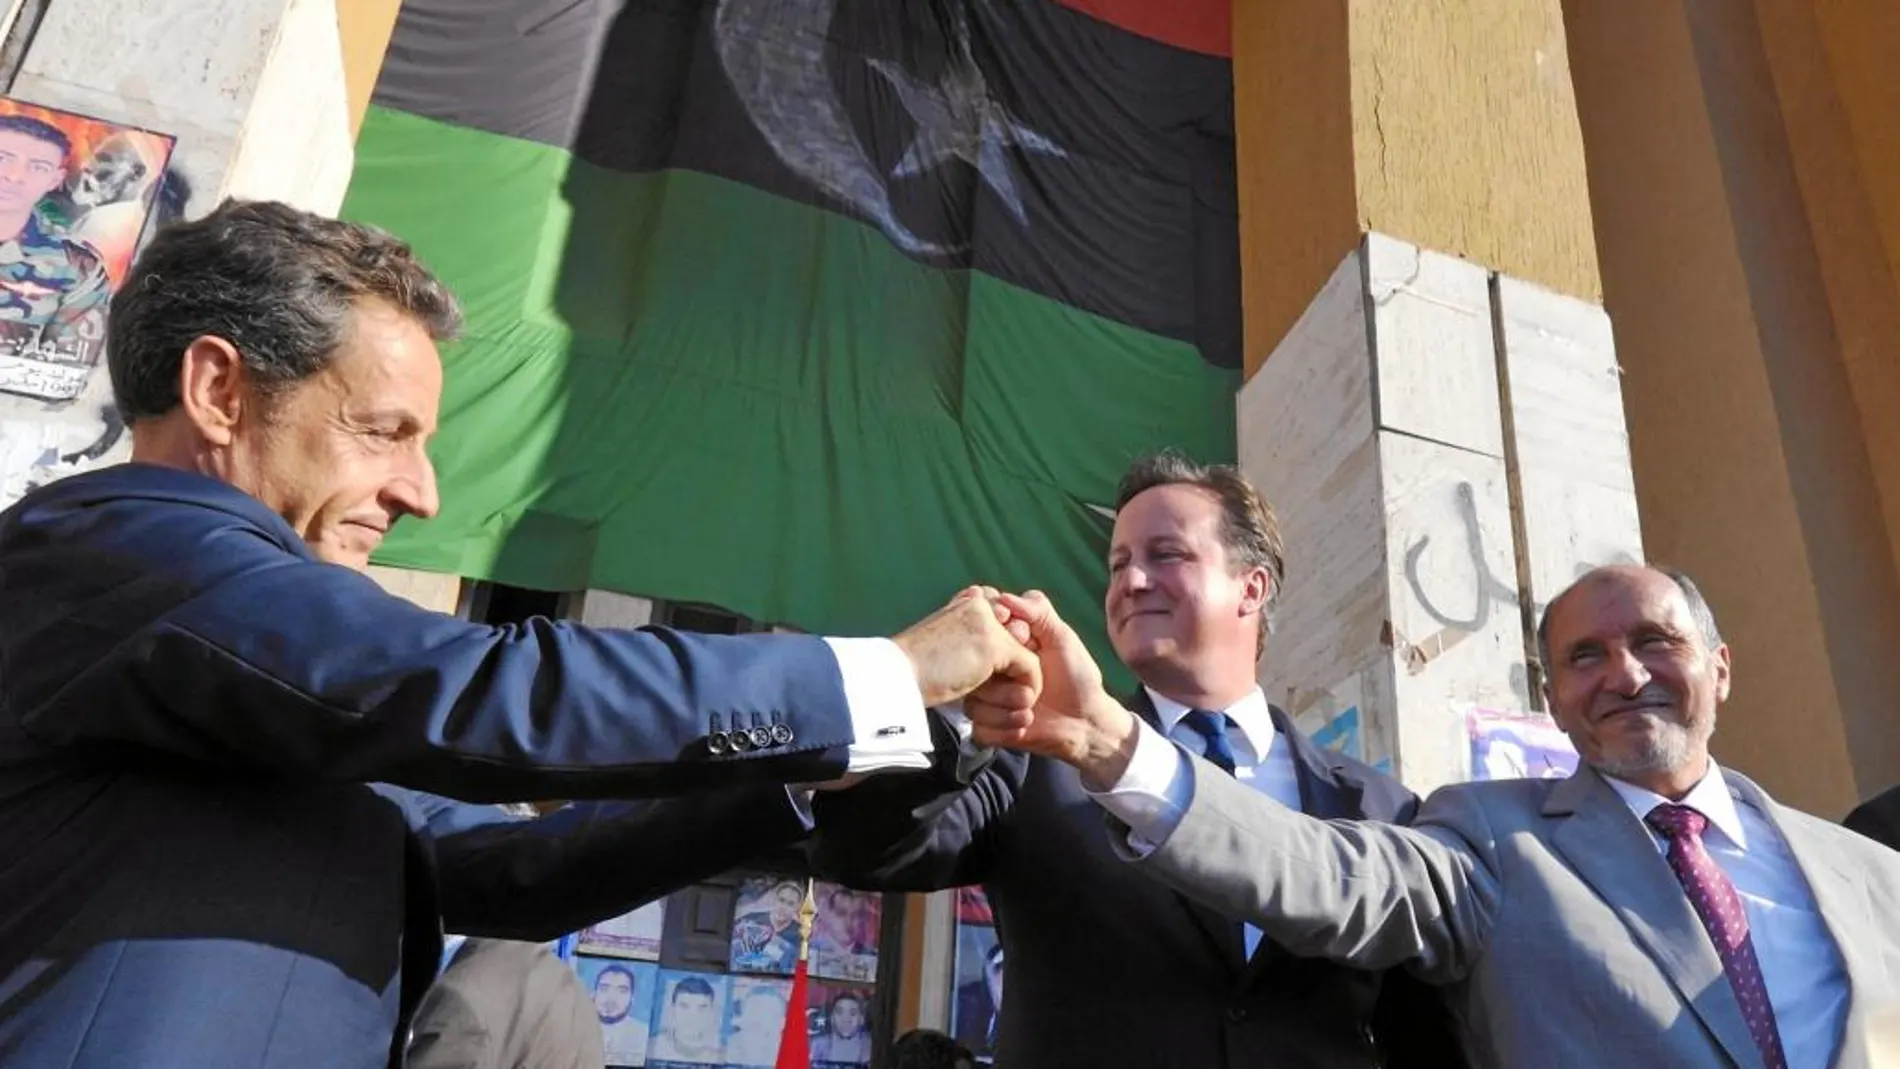 el pacto anti-gadafi. En 2011, Cameron y el entonces presidente francés, Nicolas Sarkozy, lanzaron una operación para acabar con Muamar el Gadafi, que condujo a la actual situación de desgobierno en el país